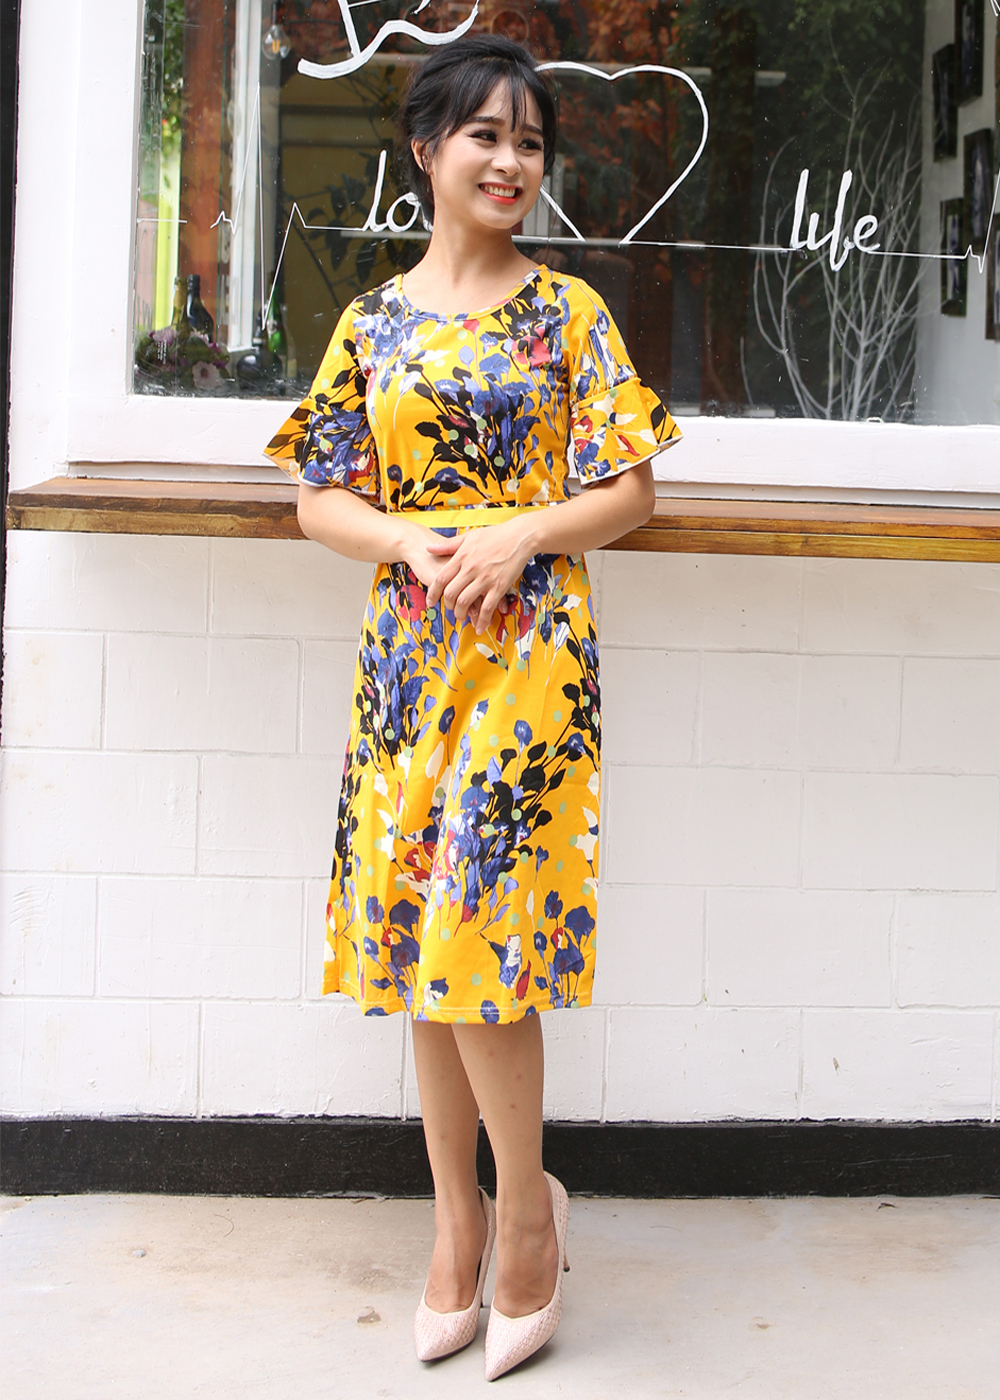 Váy Hoa Vàng Tiểu Thư Cổ Tròn Ôm Eo New4all VH3060 - Freesize Cho người dưới 50Kg